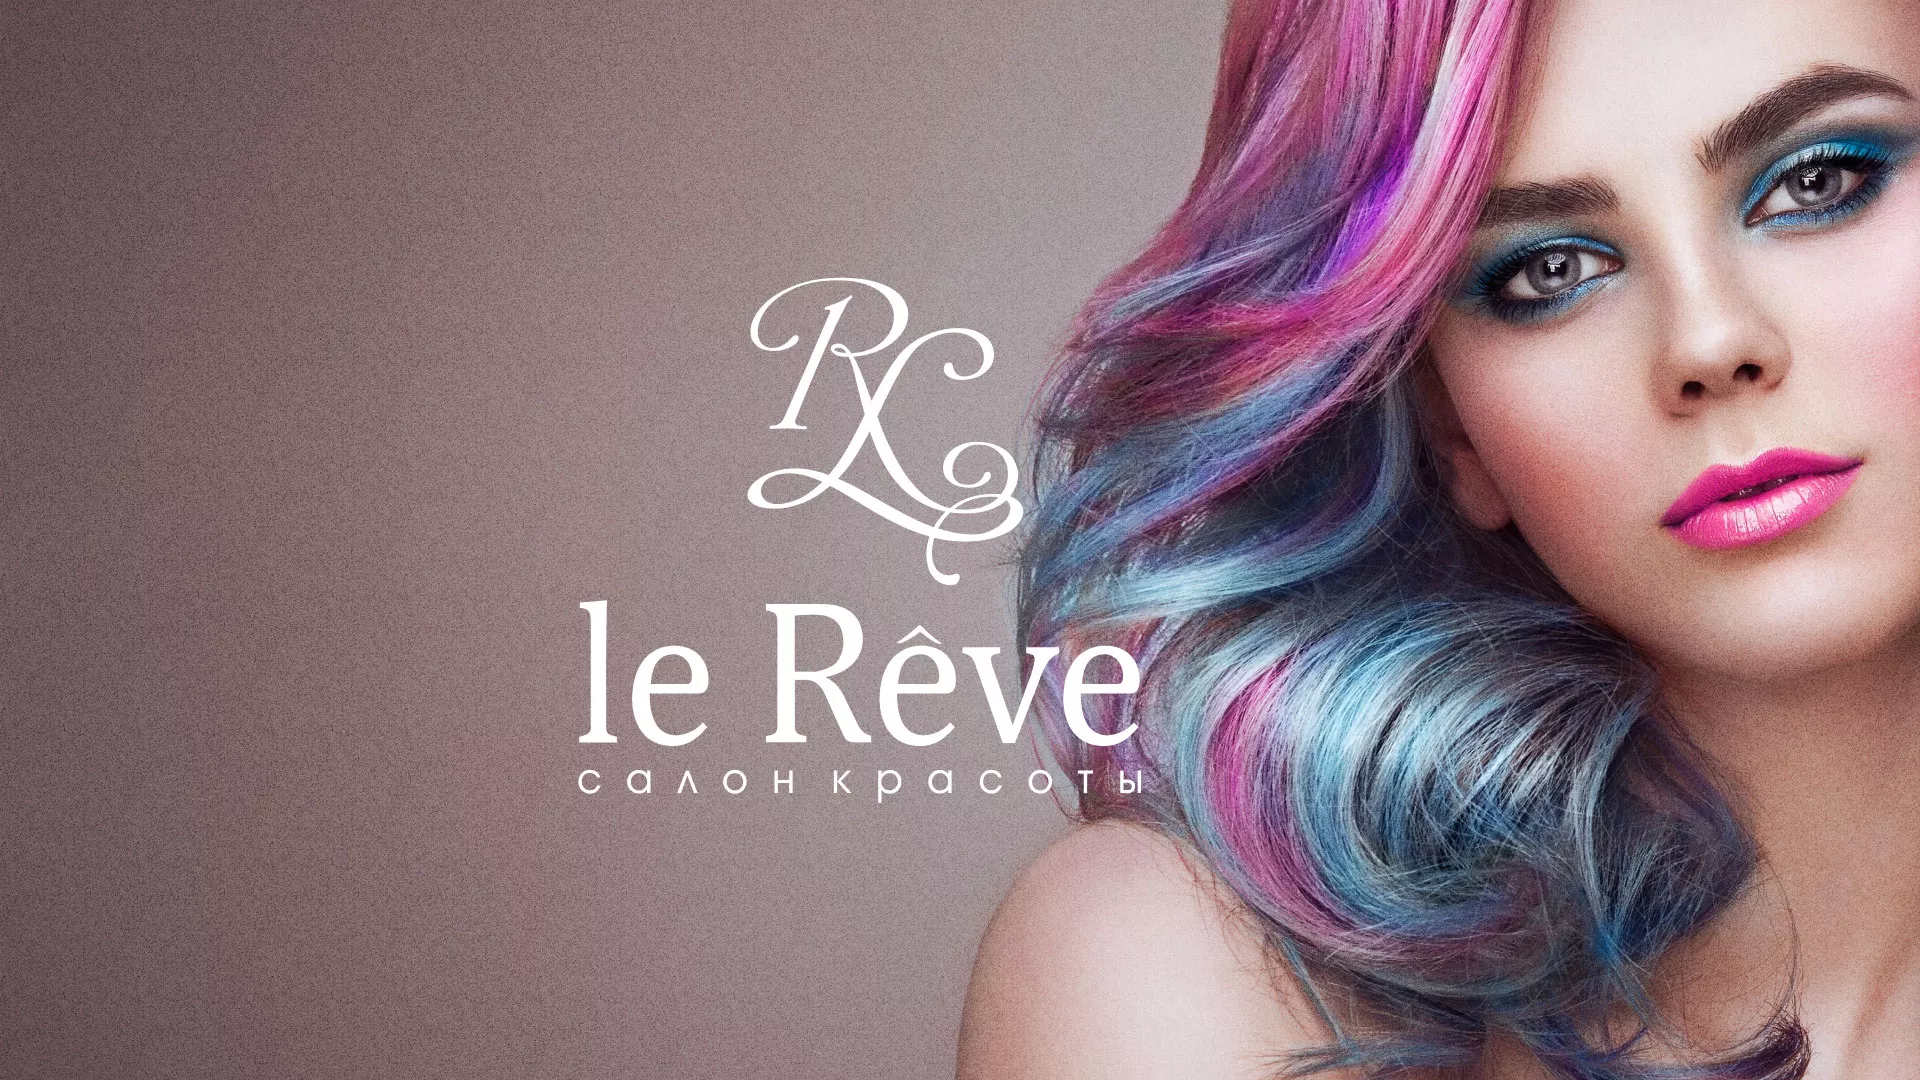 Создание сайта для салона красоты «Le Reve» в Богородске